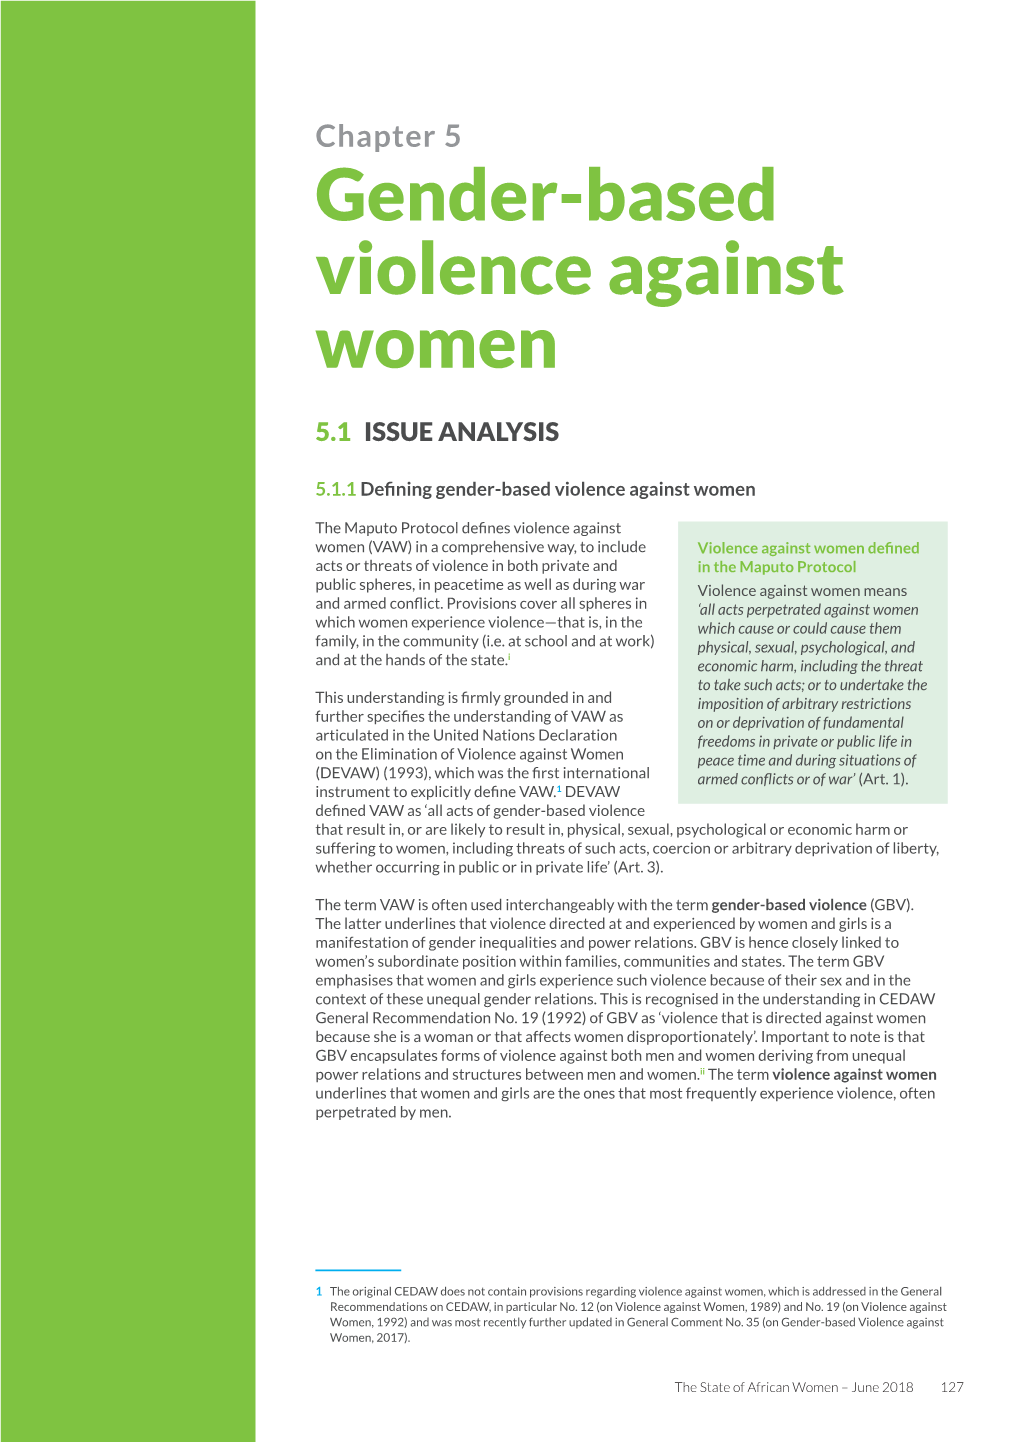 Gender-Based Violence Against Women